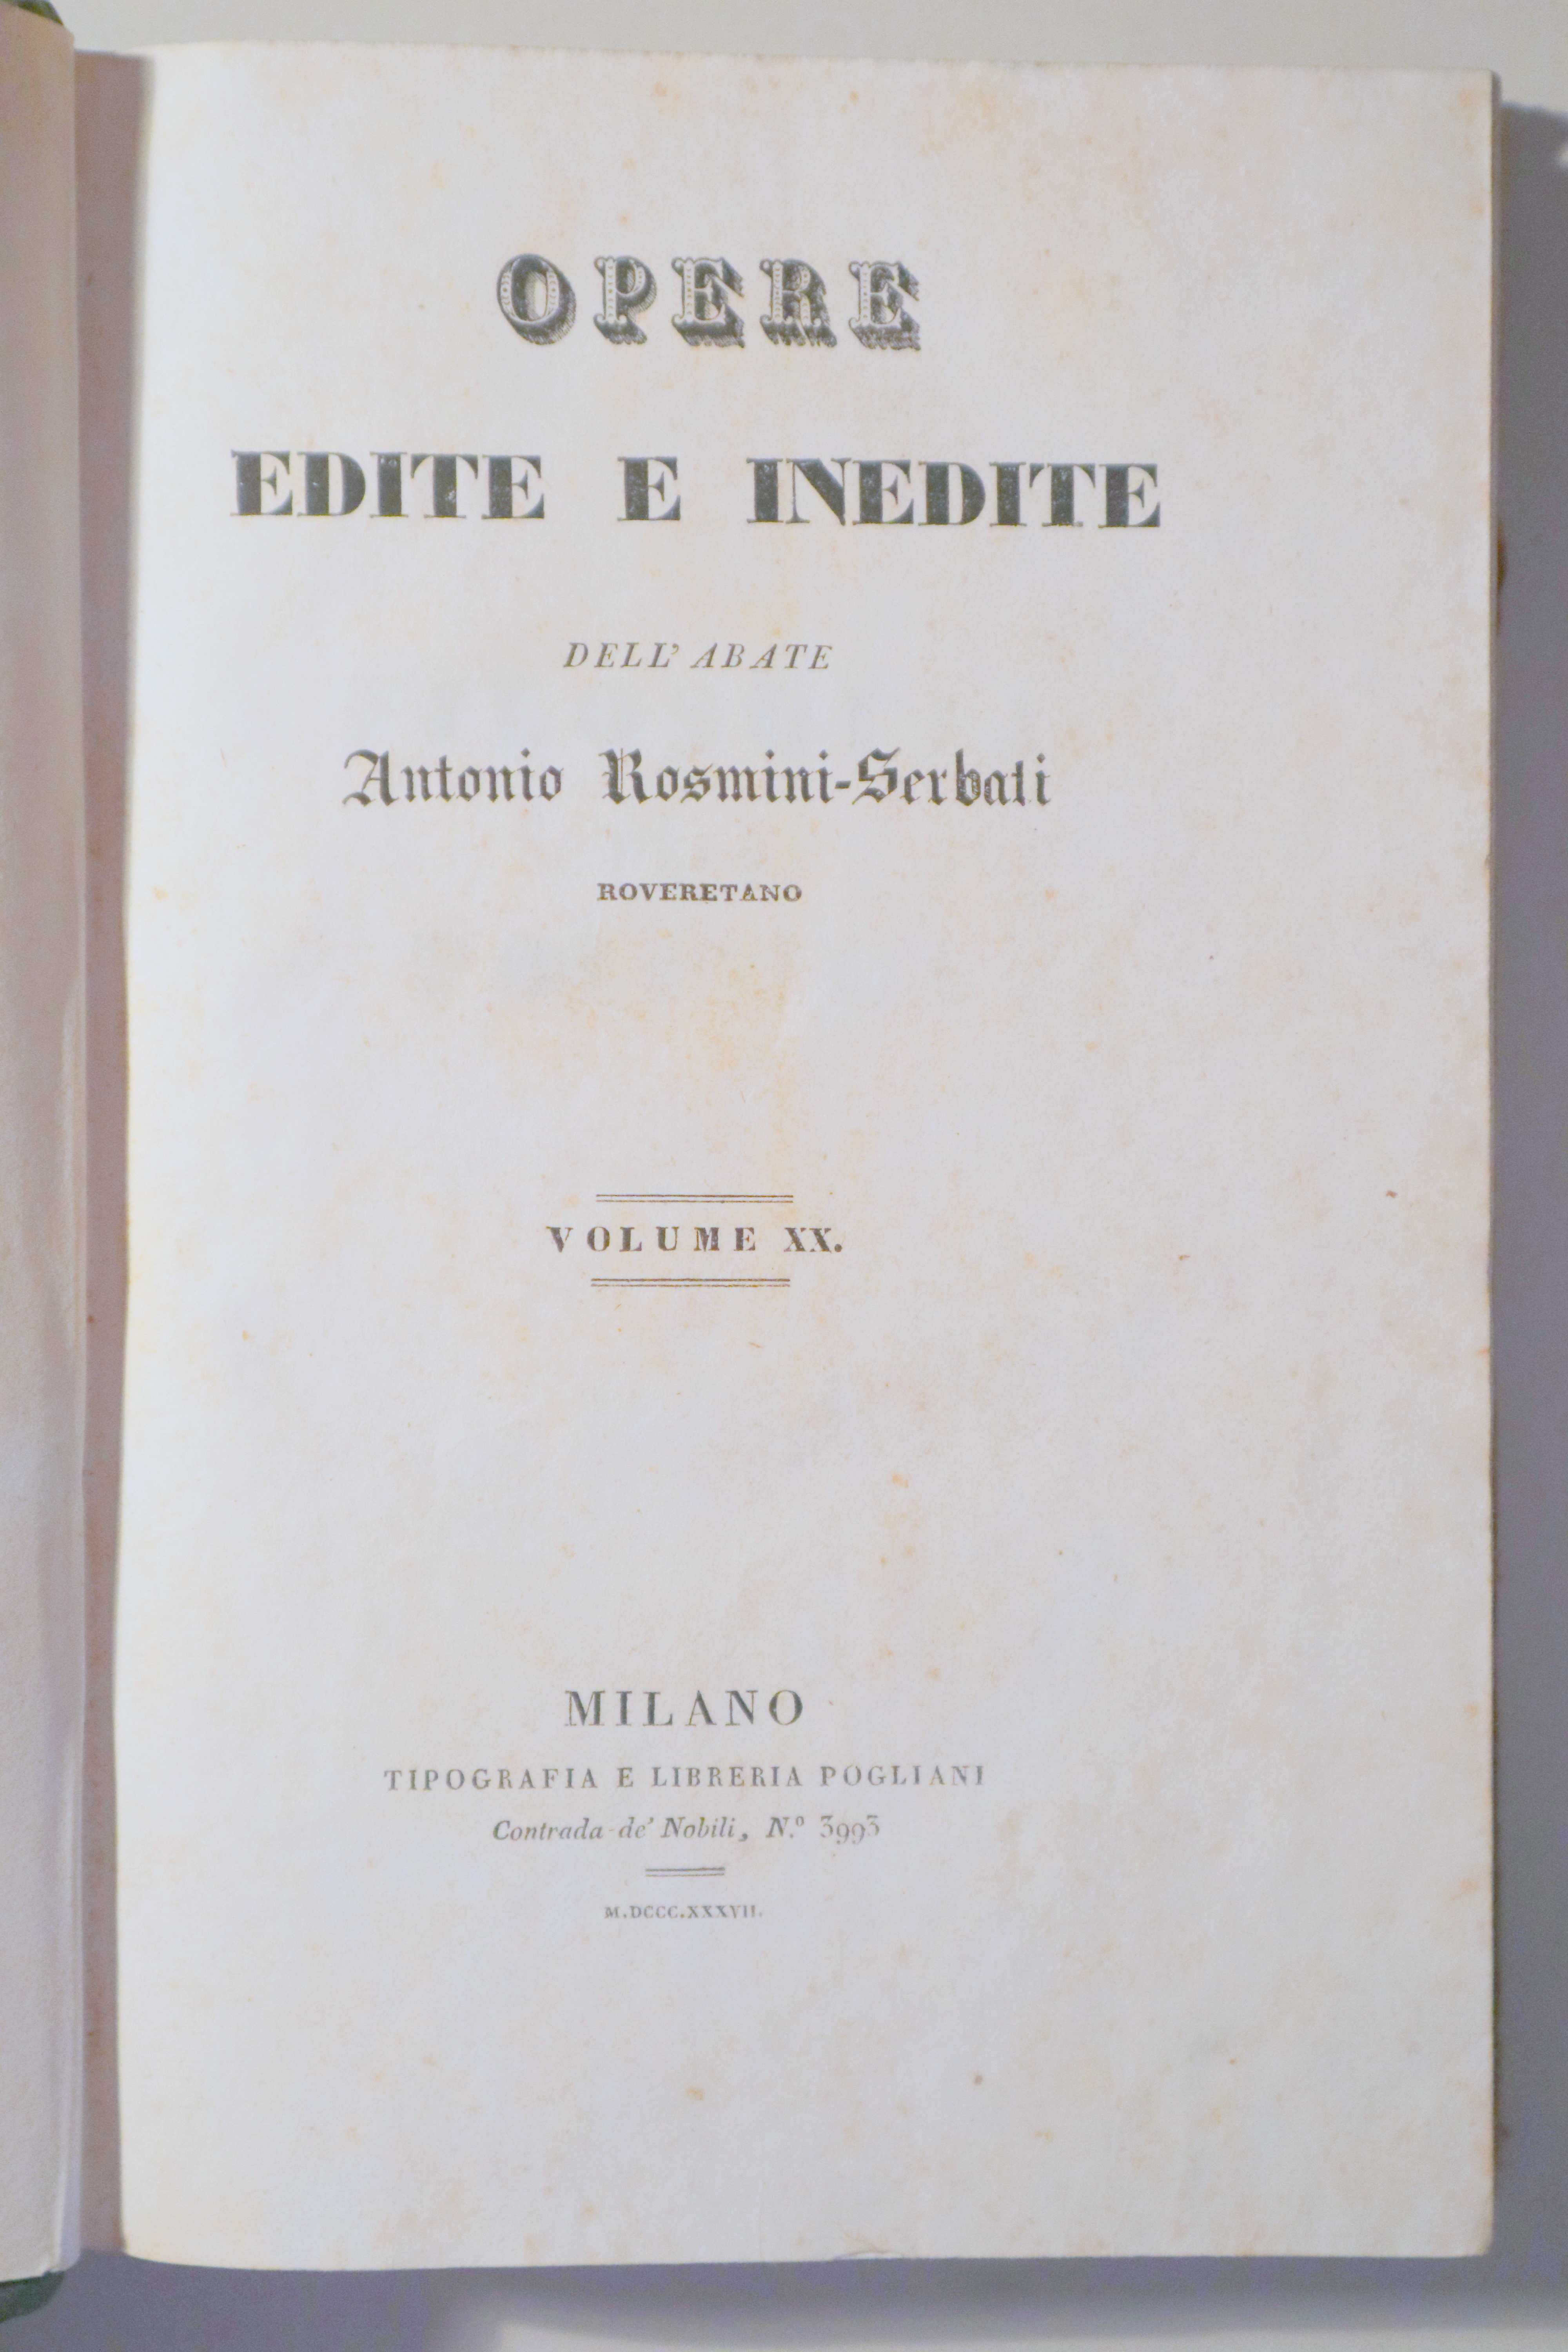 OPERE EDITE E INEDITE DELL'ABATE A. ROSMINI-SERBATI. Vol. XX. Filosofia della politica vol I - Milano 1837